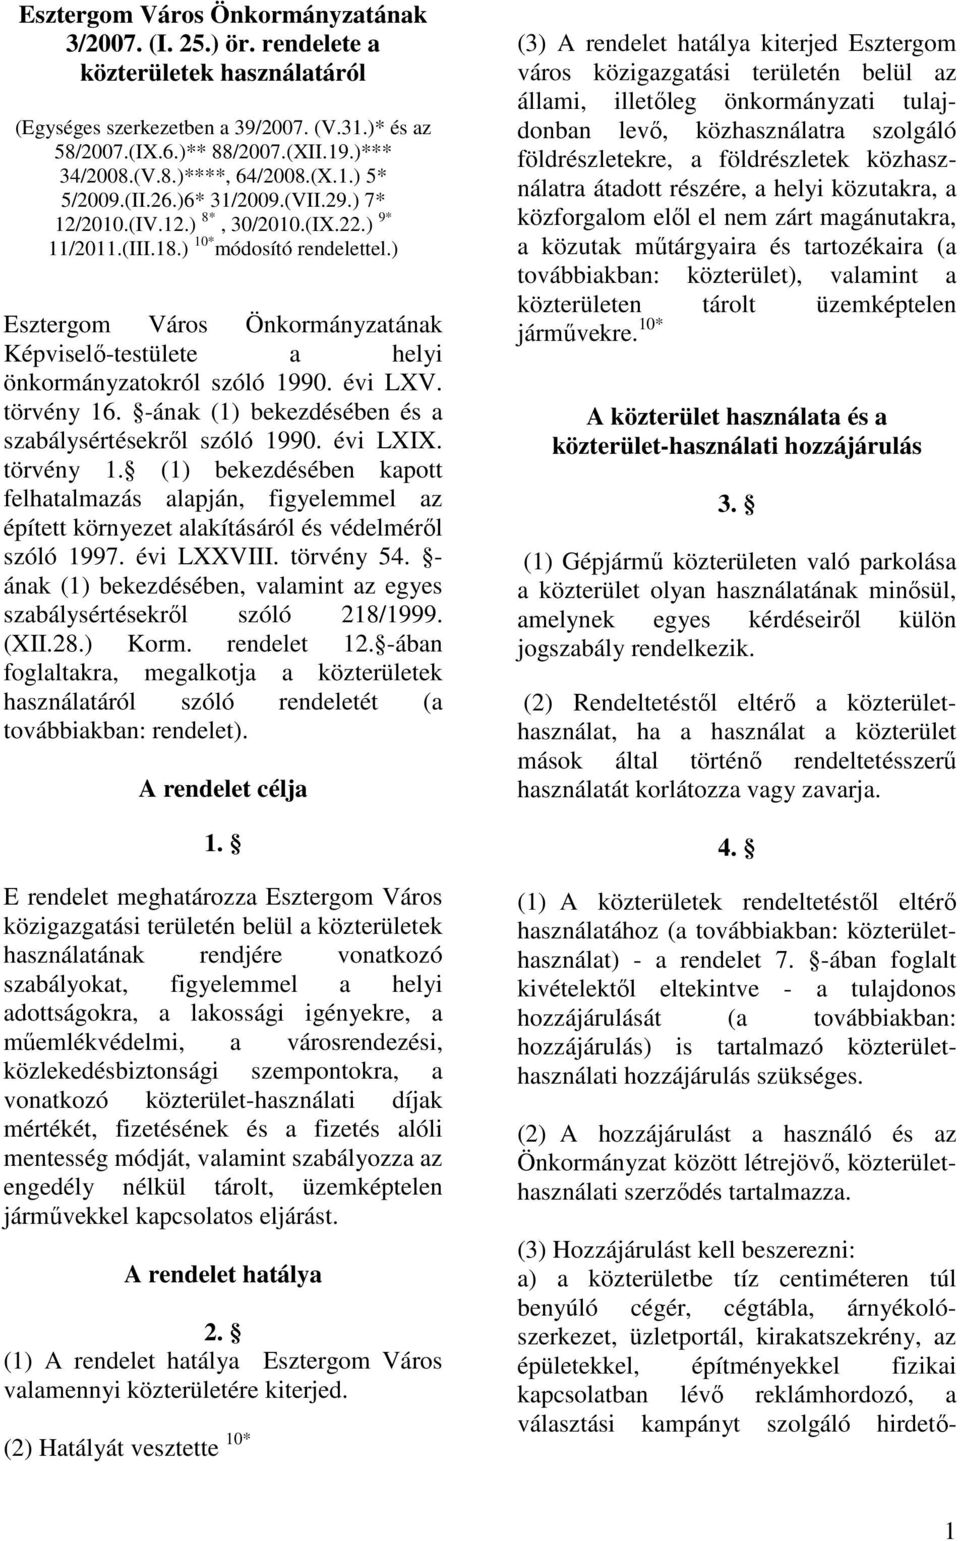 ) Esztergom Város Önkormányzatának Képviselı-testülete a helyi önkormányzatokról szóló 1990. évi LXV. törvény 16